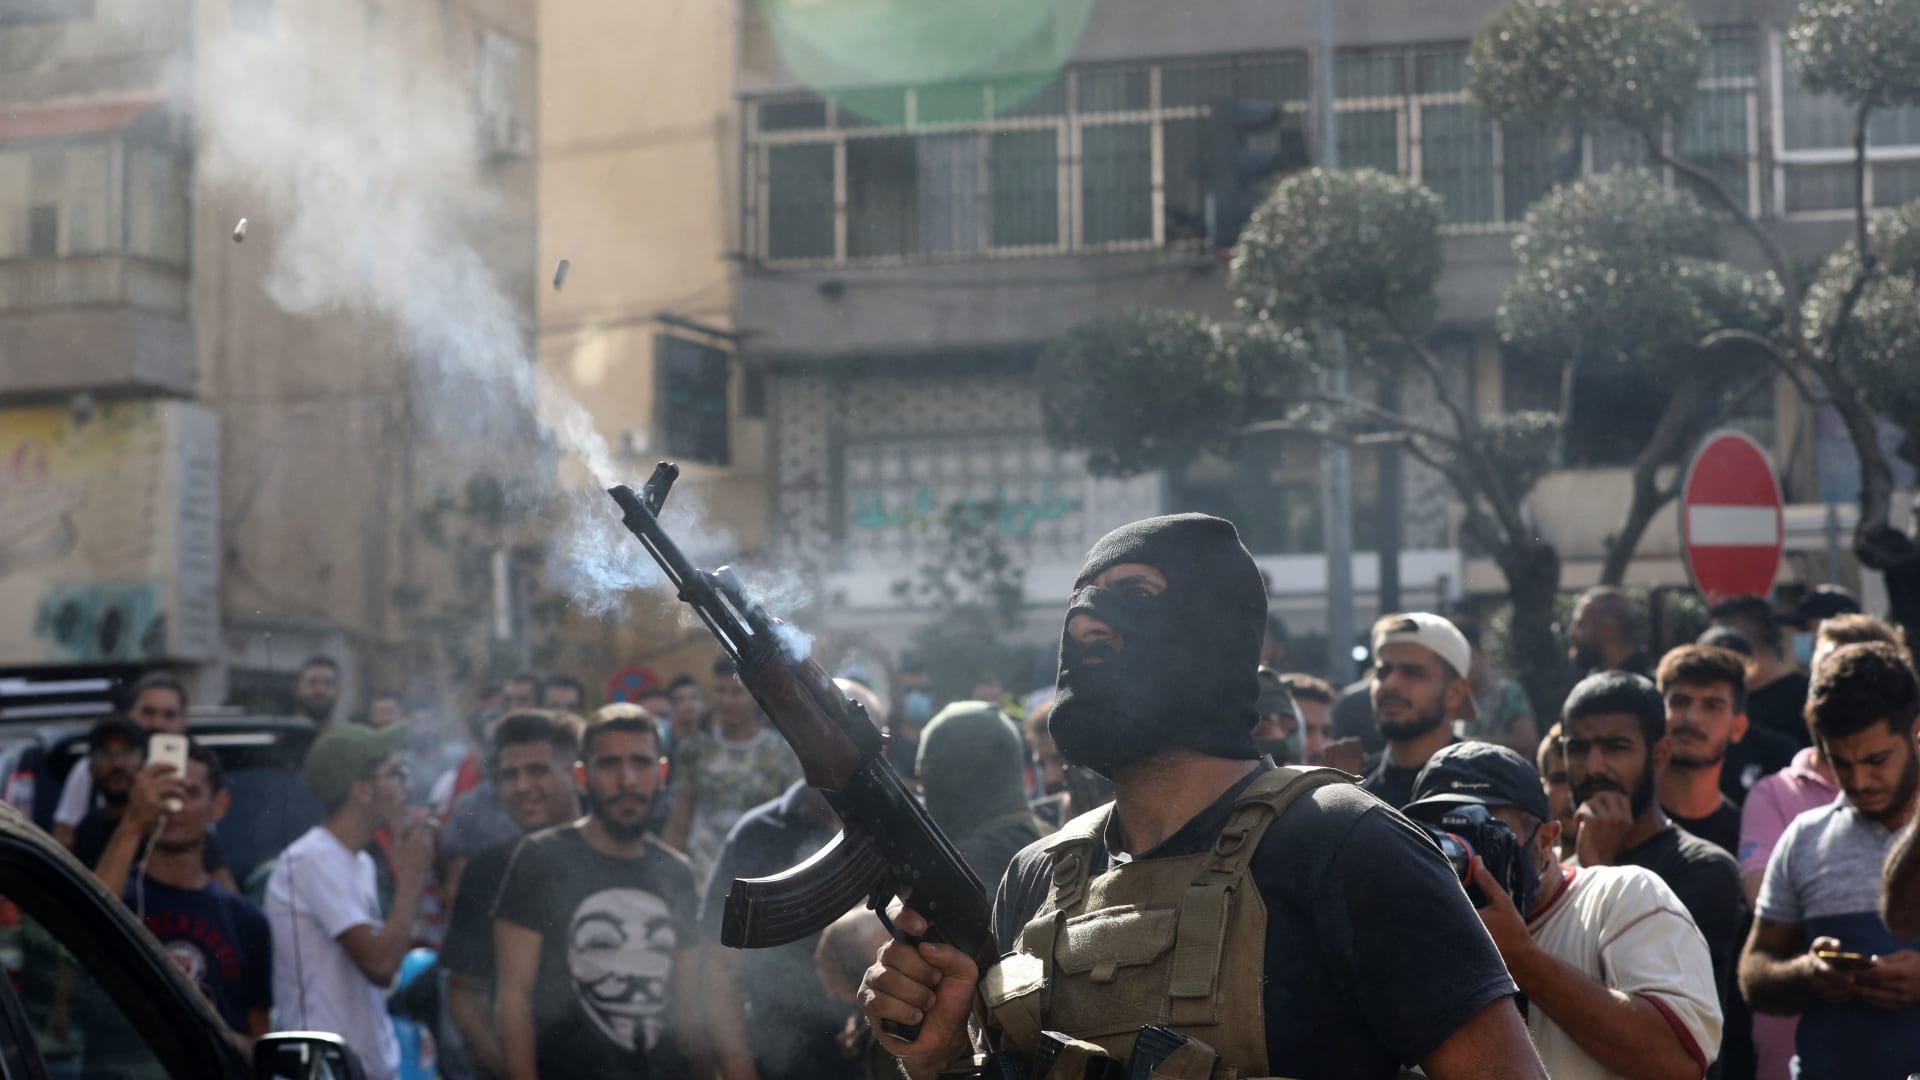 أحد عناصر حزب الله اللبناني أطلق النار من بندقيته خلال تشييع جنازة بعض عناصره الذين قتلوا خلال اشتباكات في حي الطيونة بضاحية بيروت الجنوبية في اليوم السابق، 15 أكتوبر2021.